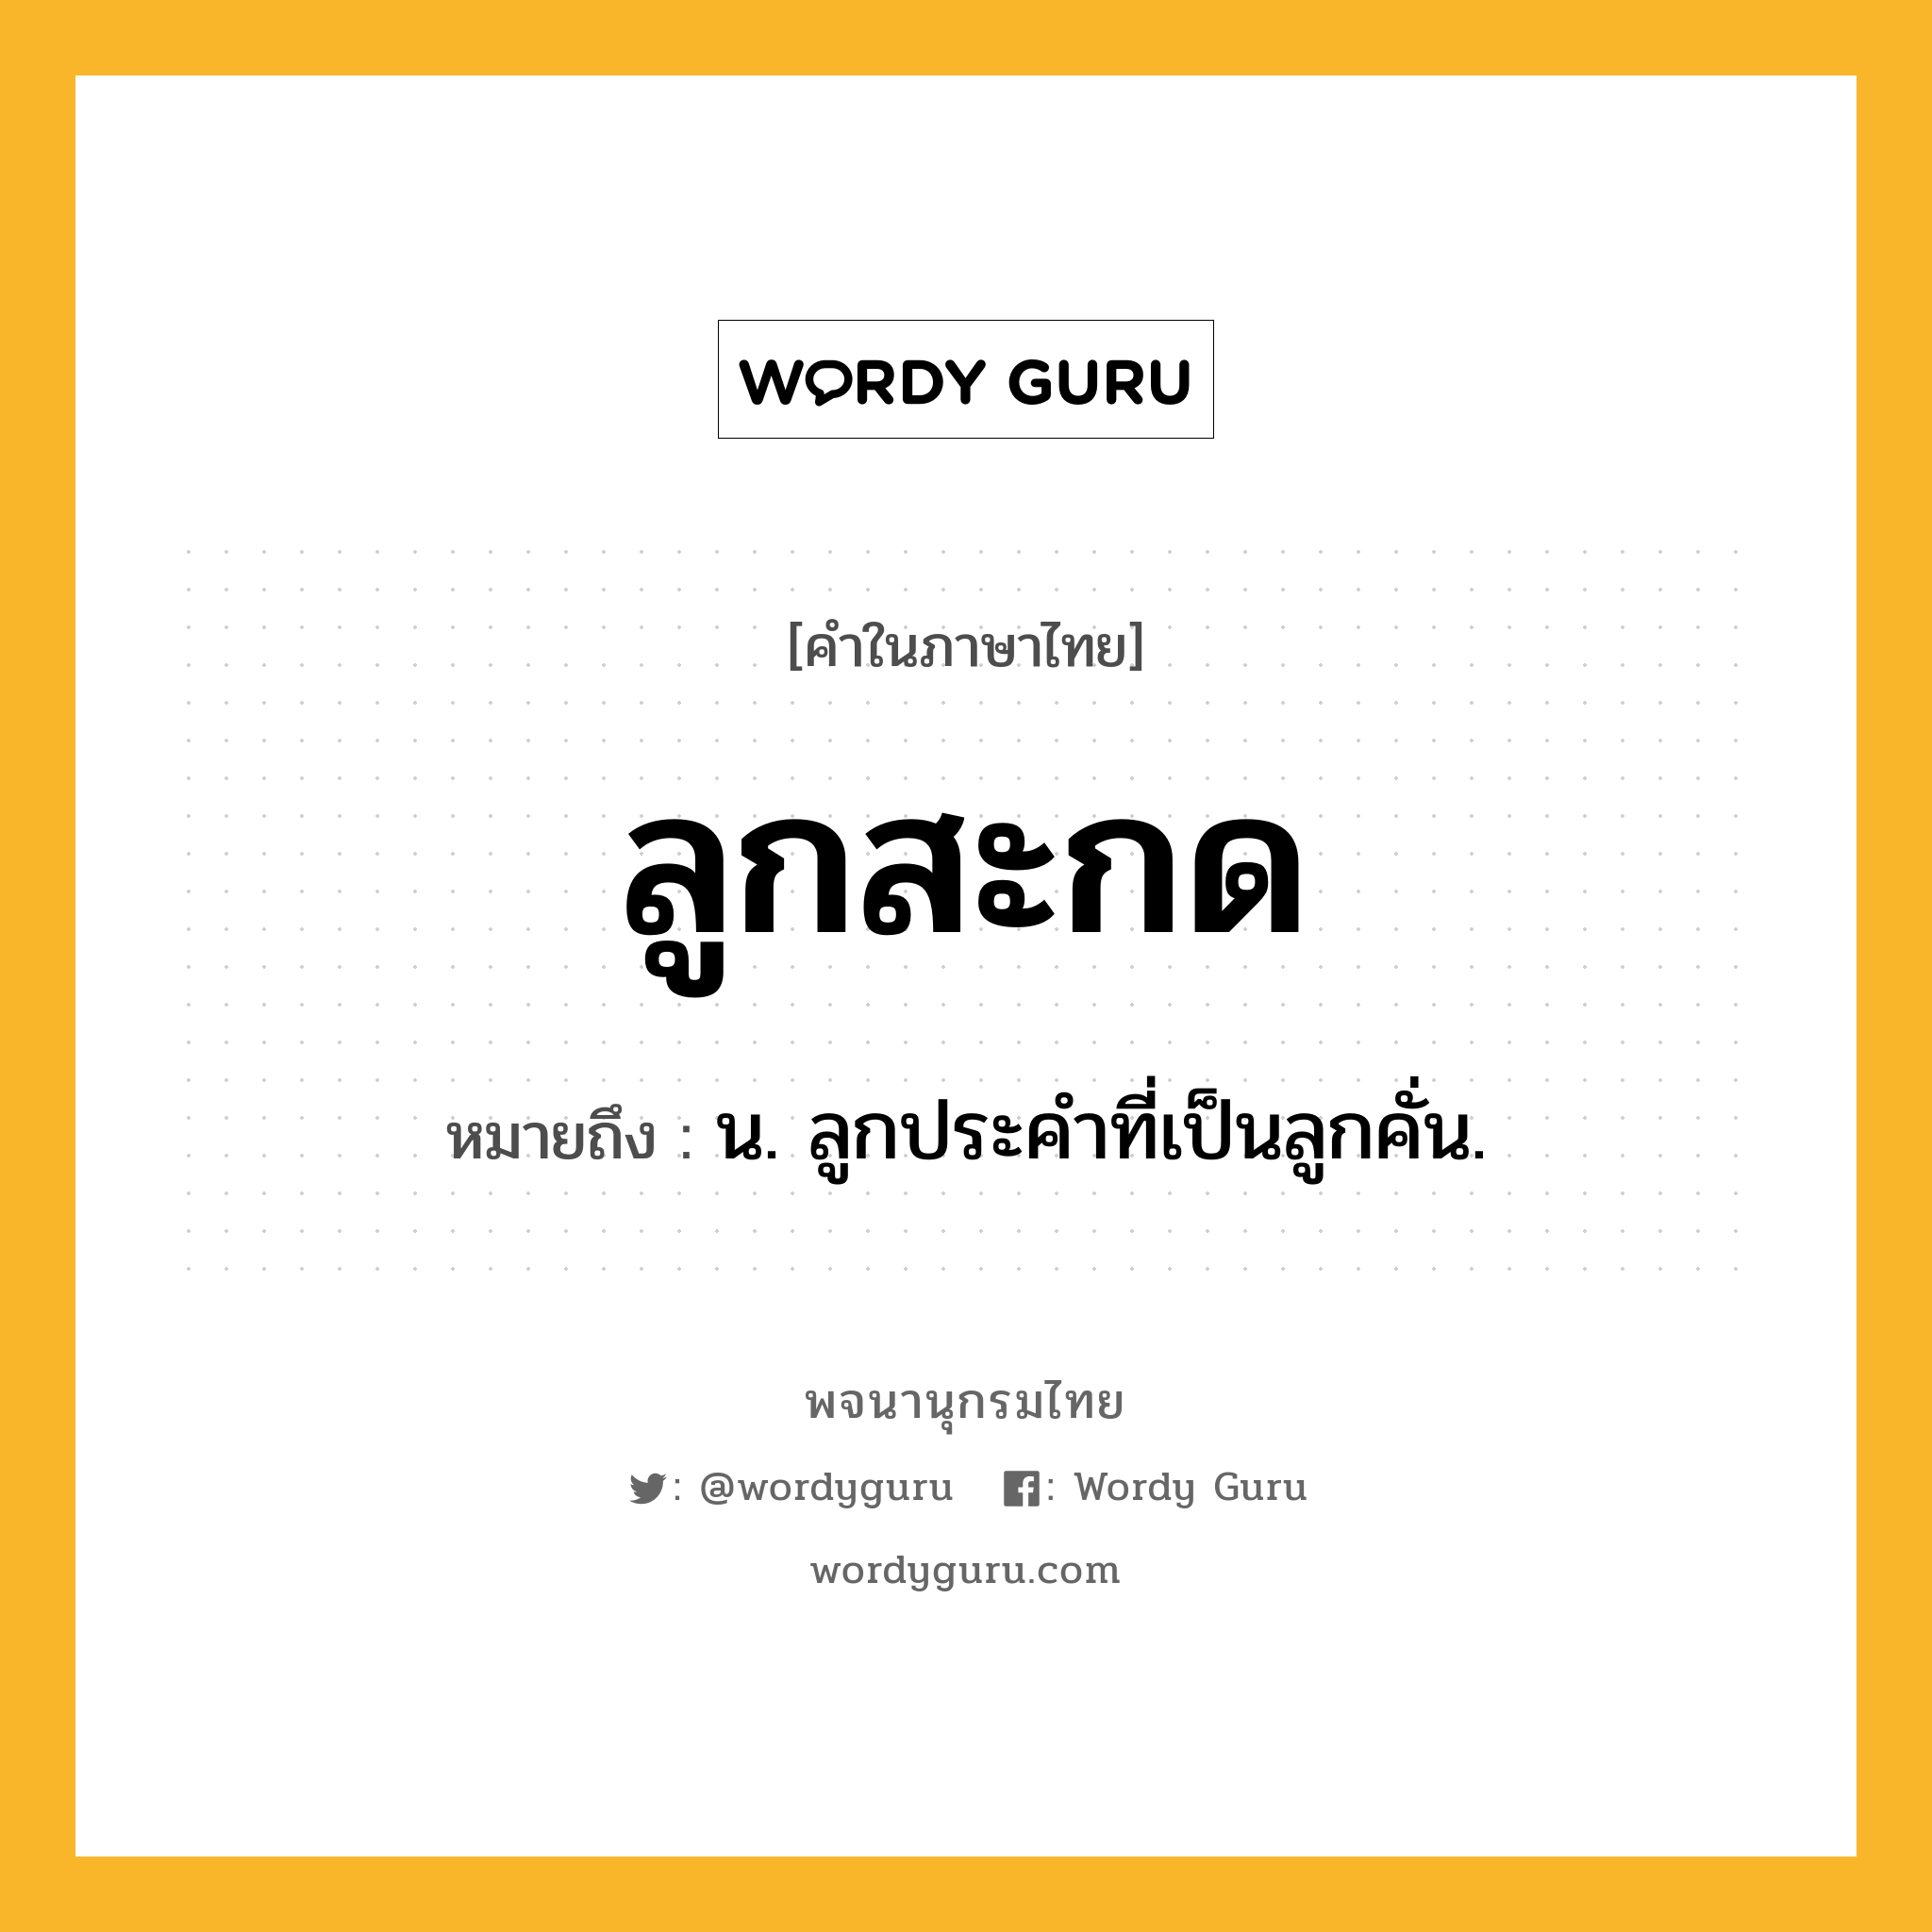 ลูกสะกด ความหมาย หมายถึงอะไร?, คำในภาษาไทย ลูกสะกด หมายถึง น. ลูกประคำที่เป็นลูกคั่น.